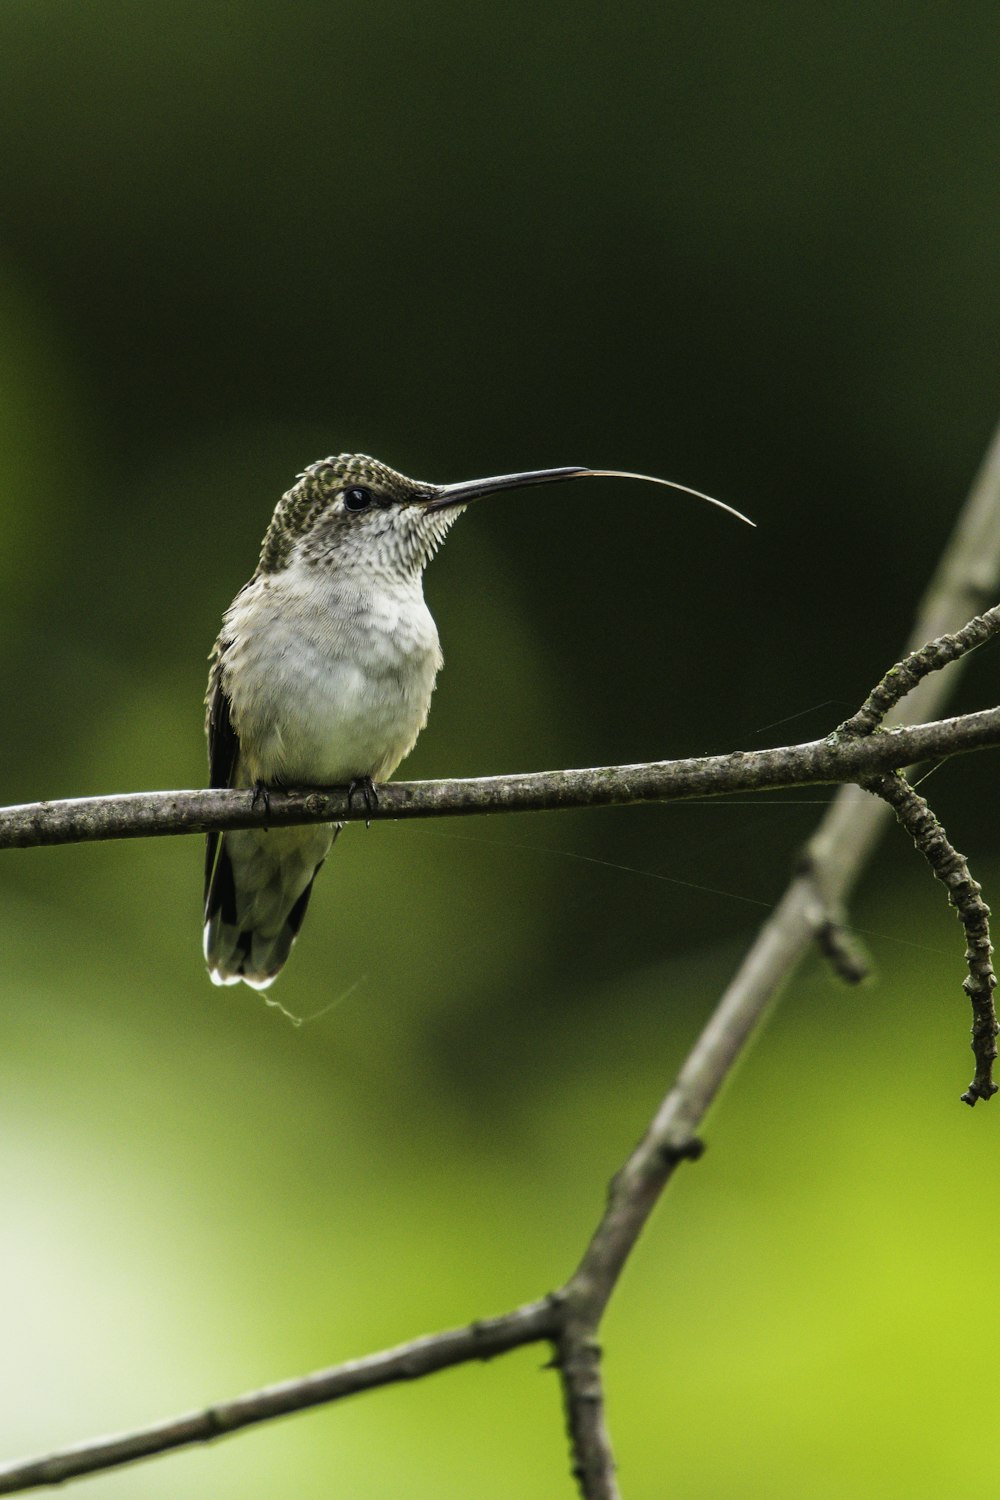 a hummingbird perches on a thin branch